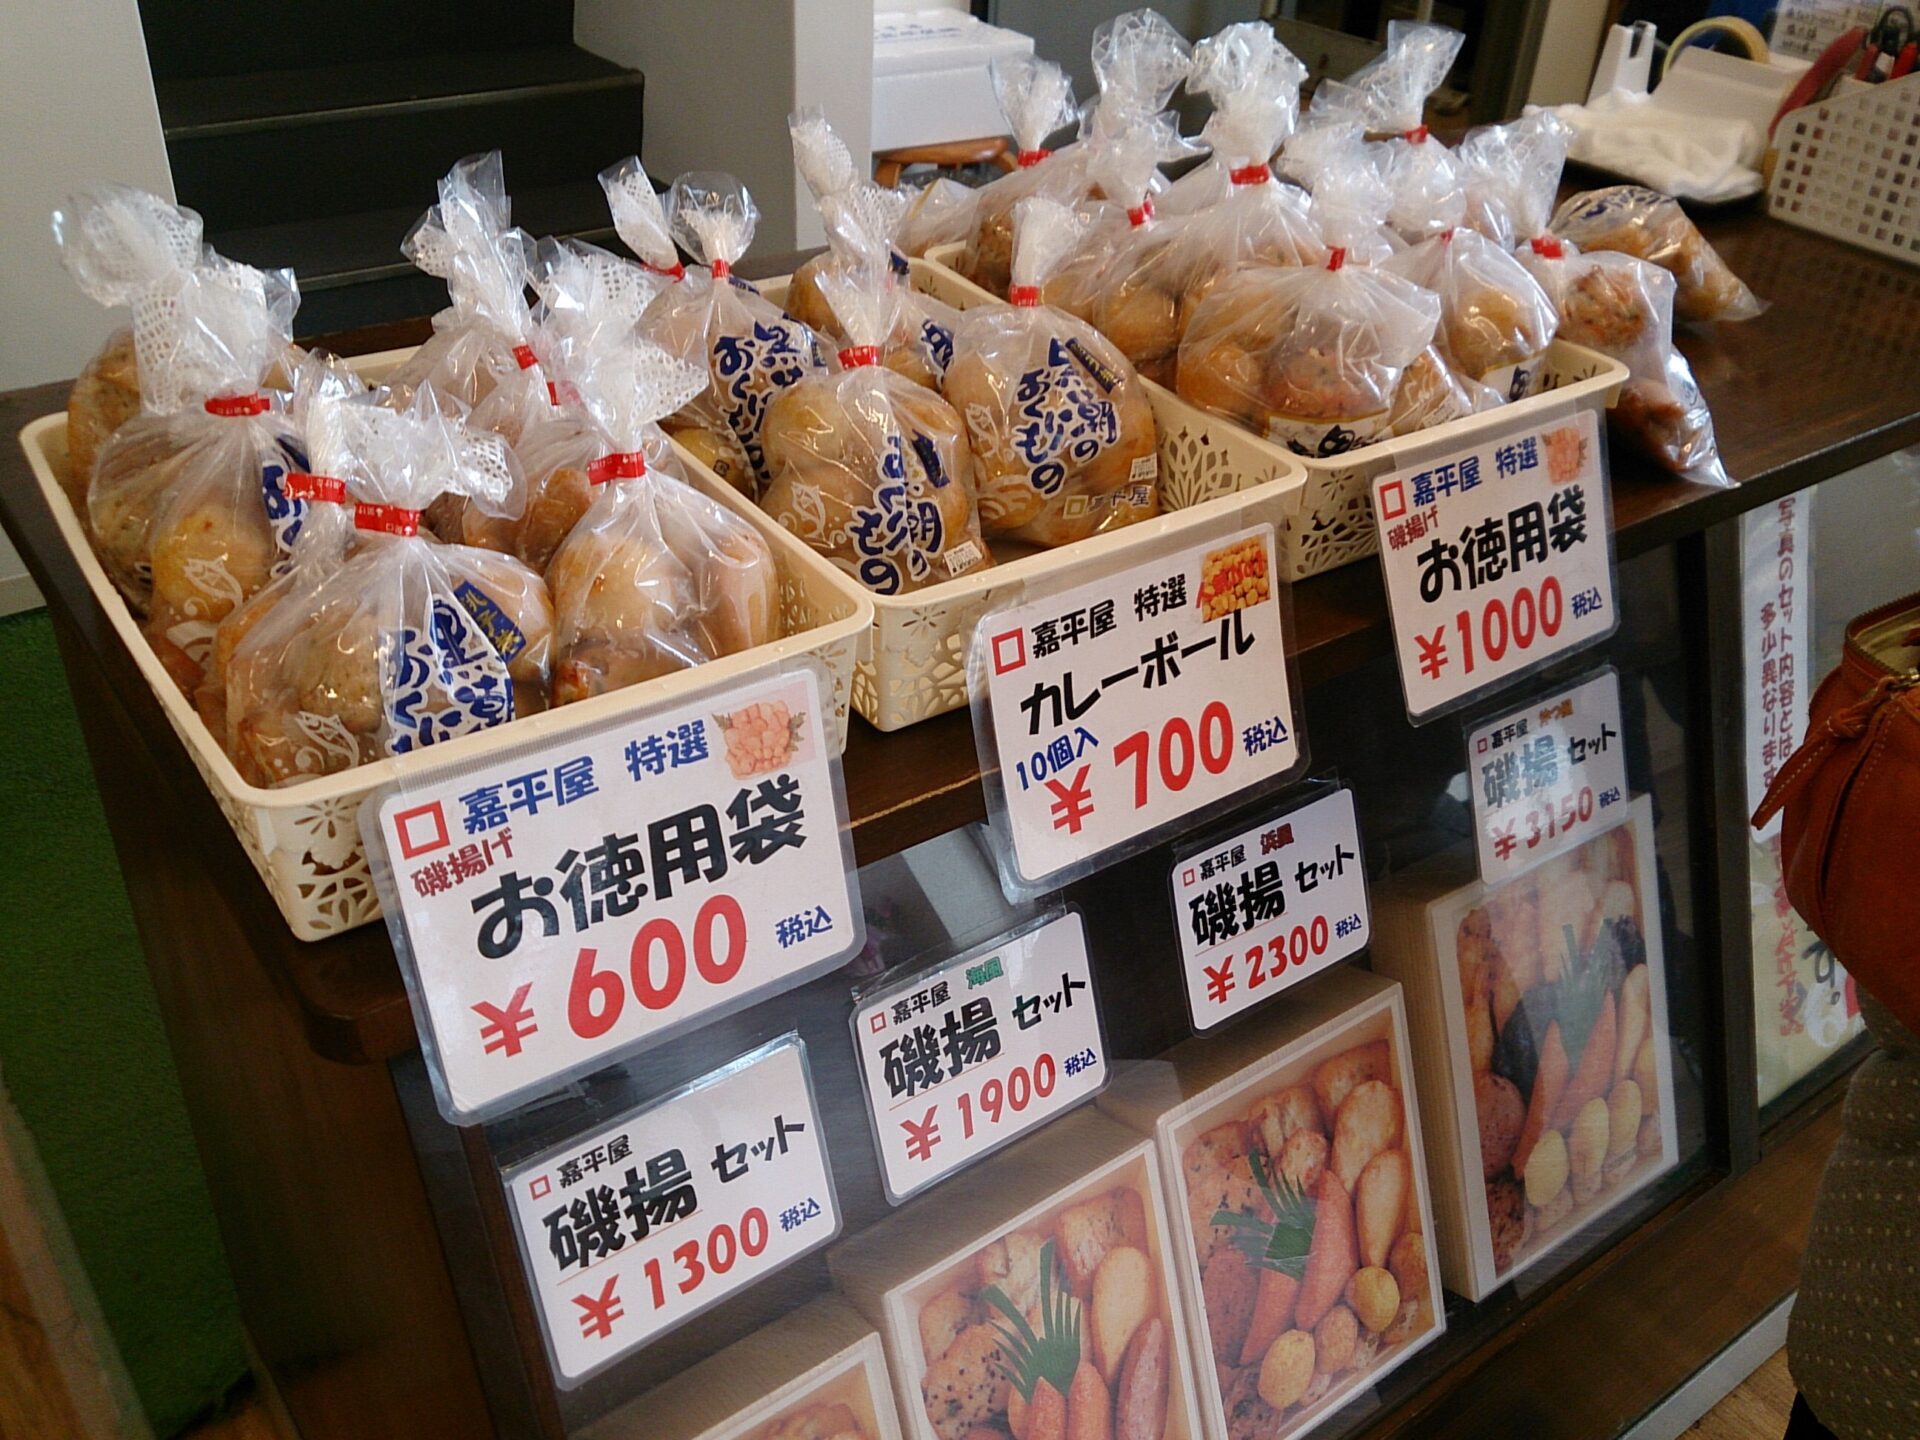 嘉平屋 川口店 おみやげセンター 銚子で江戸末期創業の老舗 人気のカレーボールは絶品の美味しさ Special Life